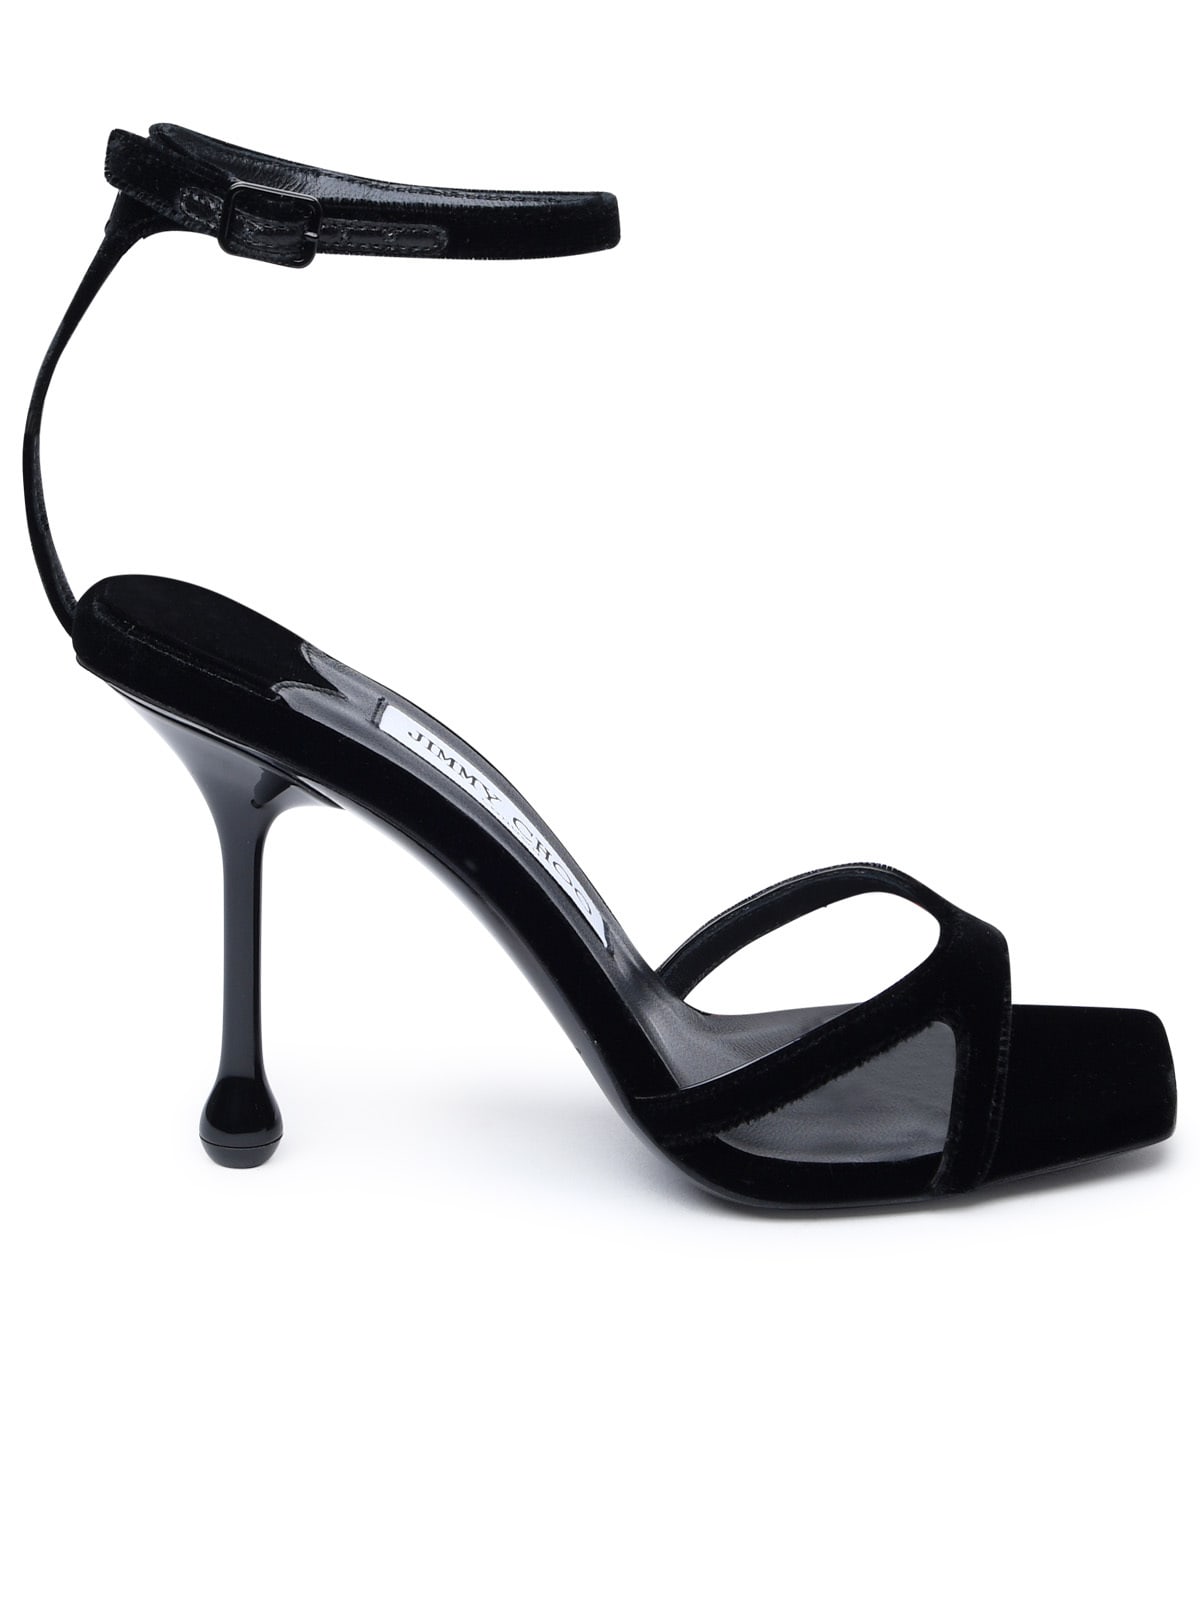 Black Velvet Sandals